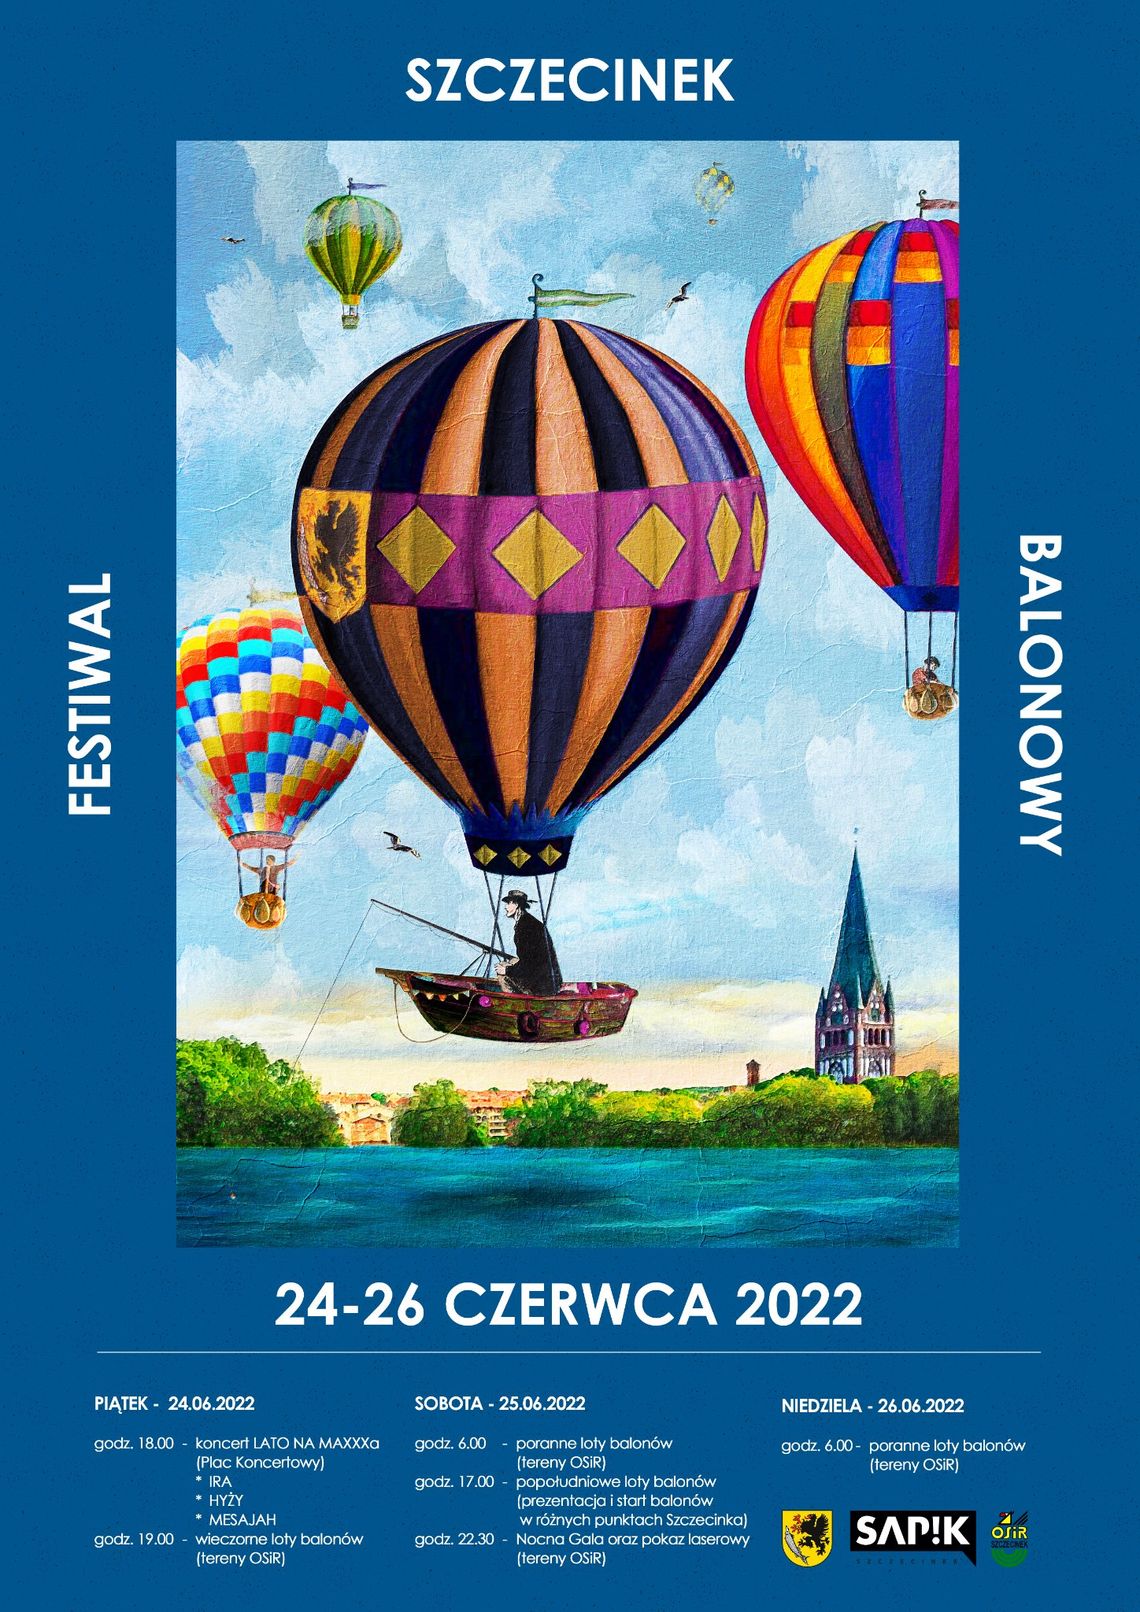 Startuje szczecineckie kulturalne lato - na początek balony